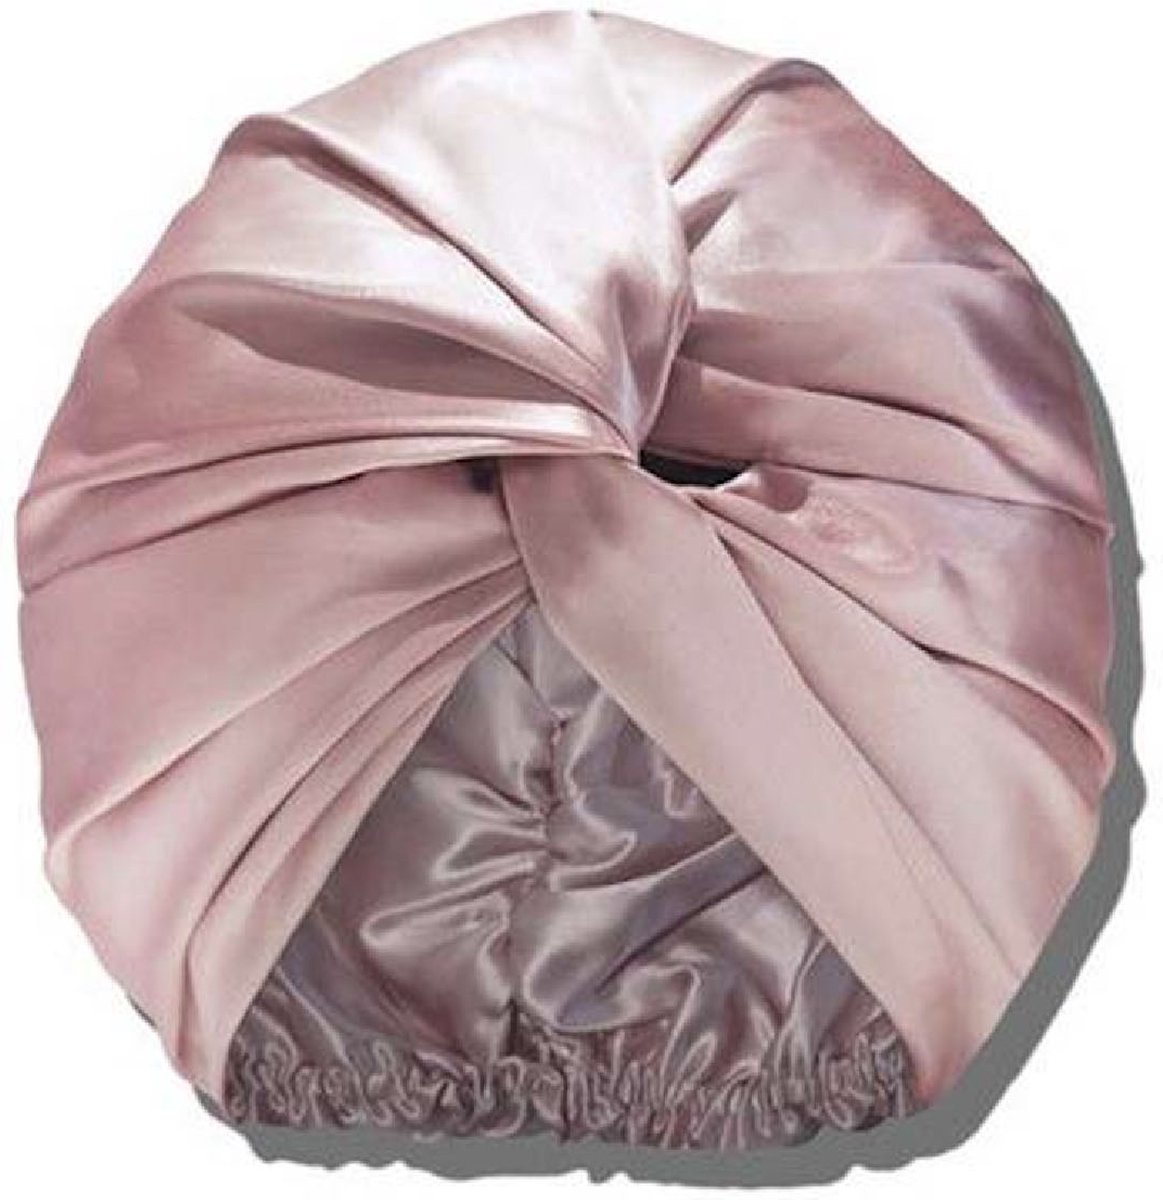 Zijden Slaapmuts - 100% Zijde - Silk Bonnet - Slaapmuts - Haarnet - Haarmuts - Medium Size - Zacht & Stralend Haar - Voor Volwassenen